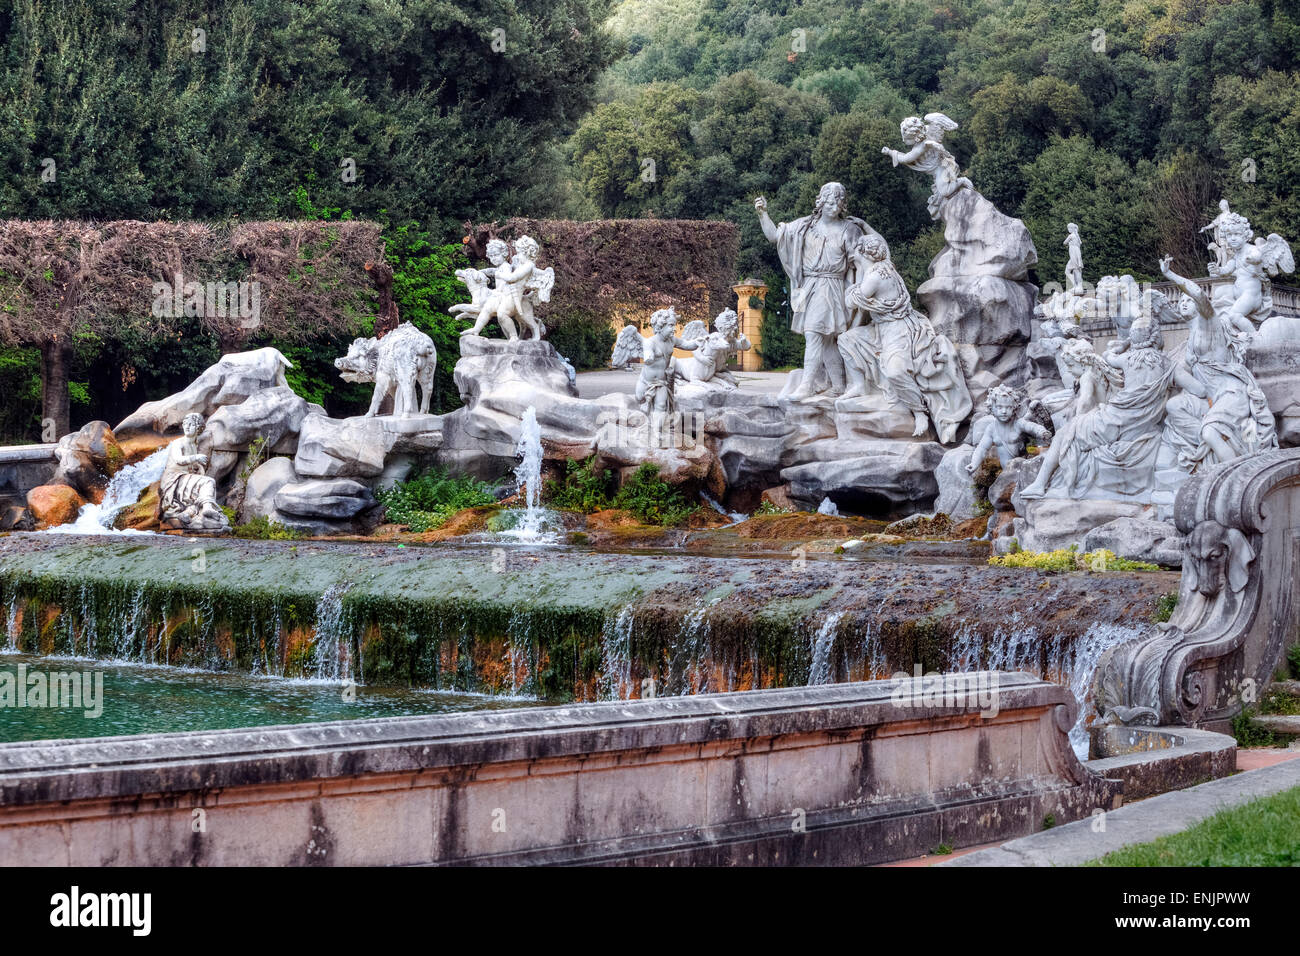 Royal Palace of Caserta, Caserta, Campania, Italy Stock Photo